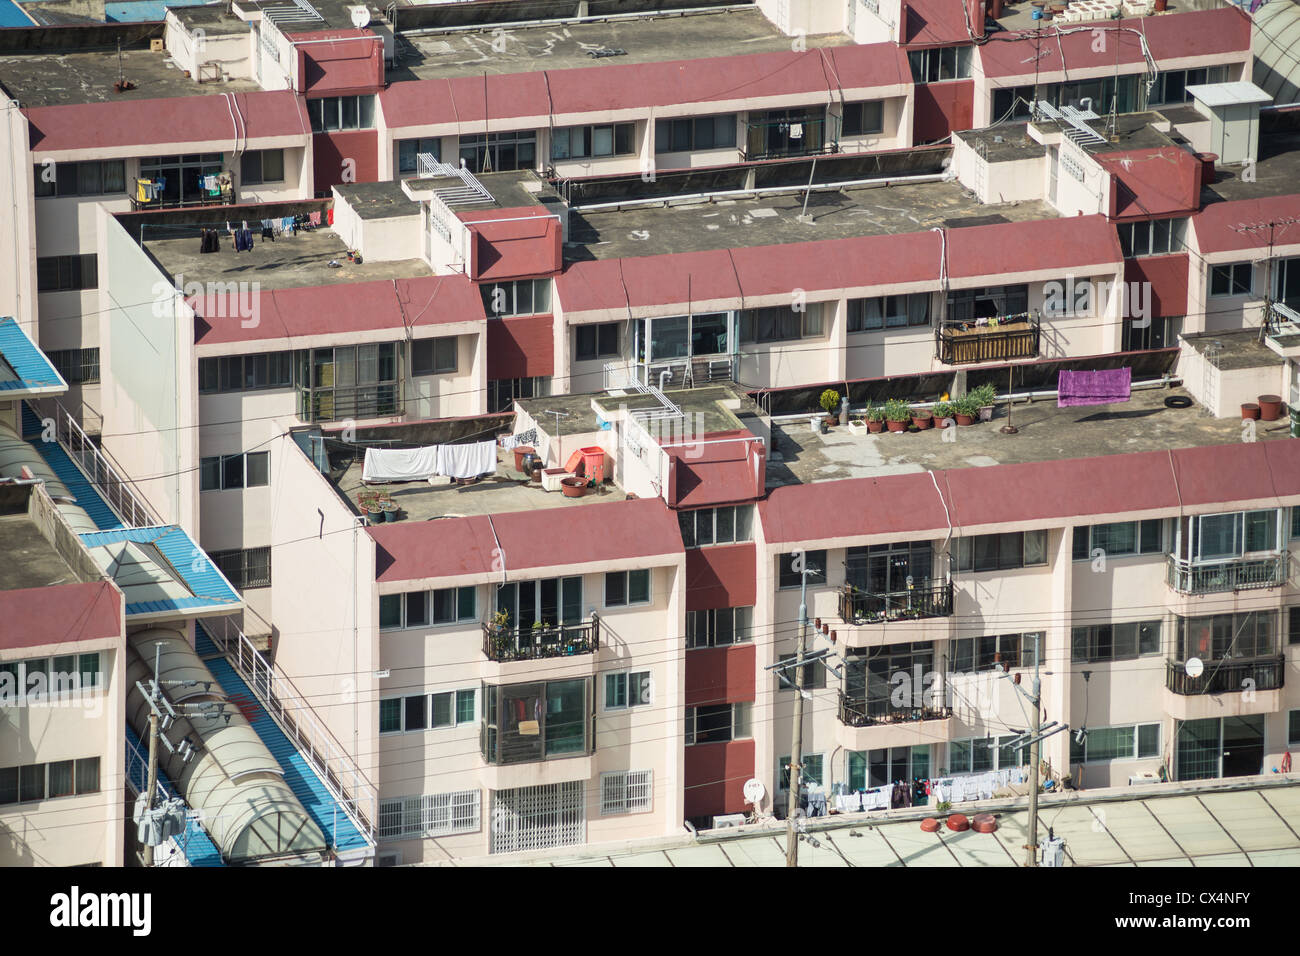 Typische koreanische Mehrfamilienhäuser von oben gesehen Stockfoto